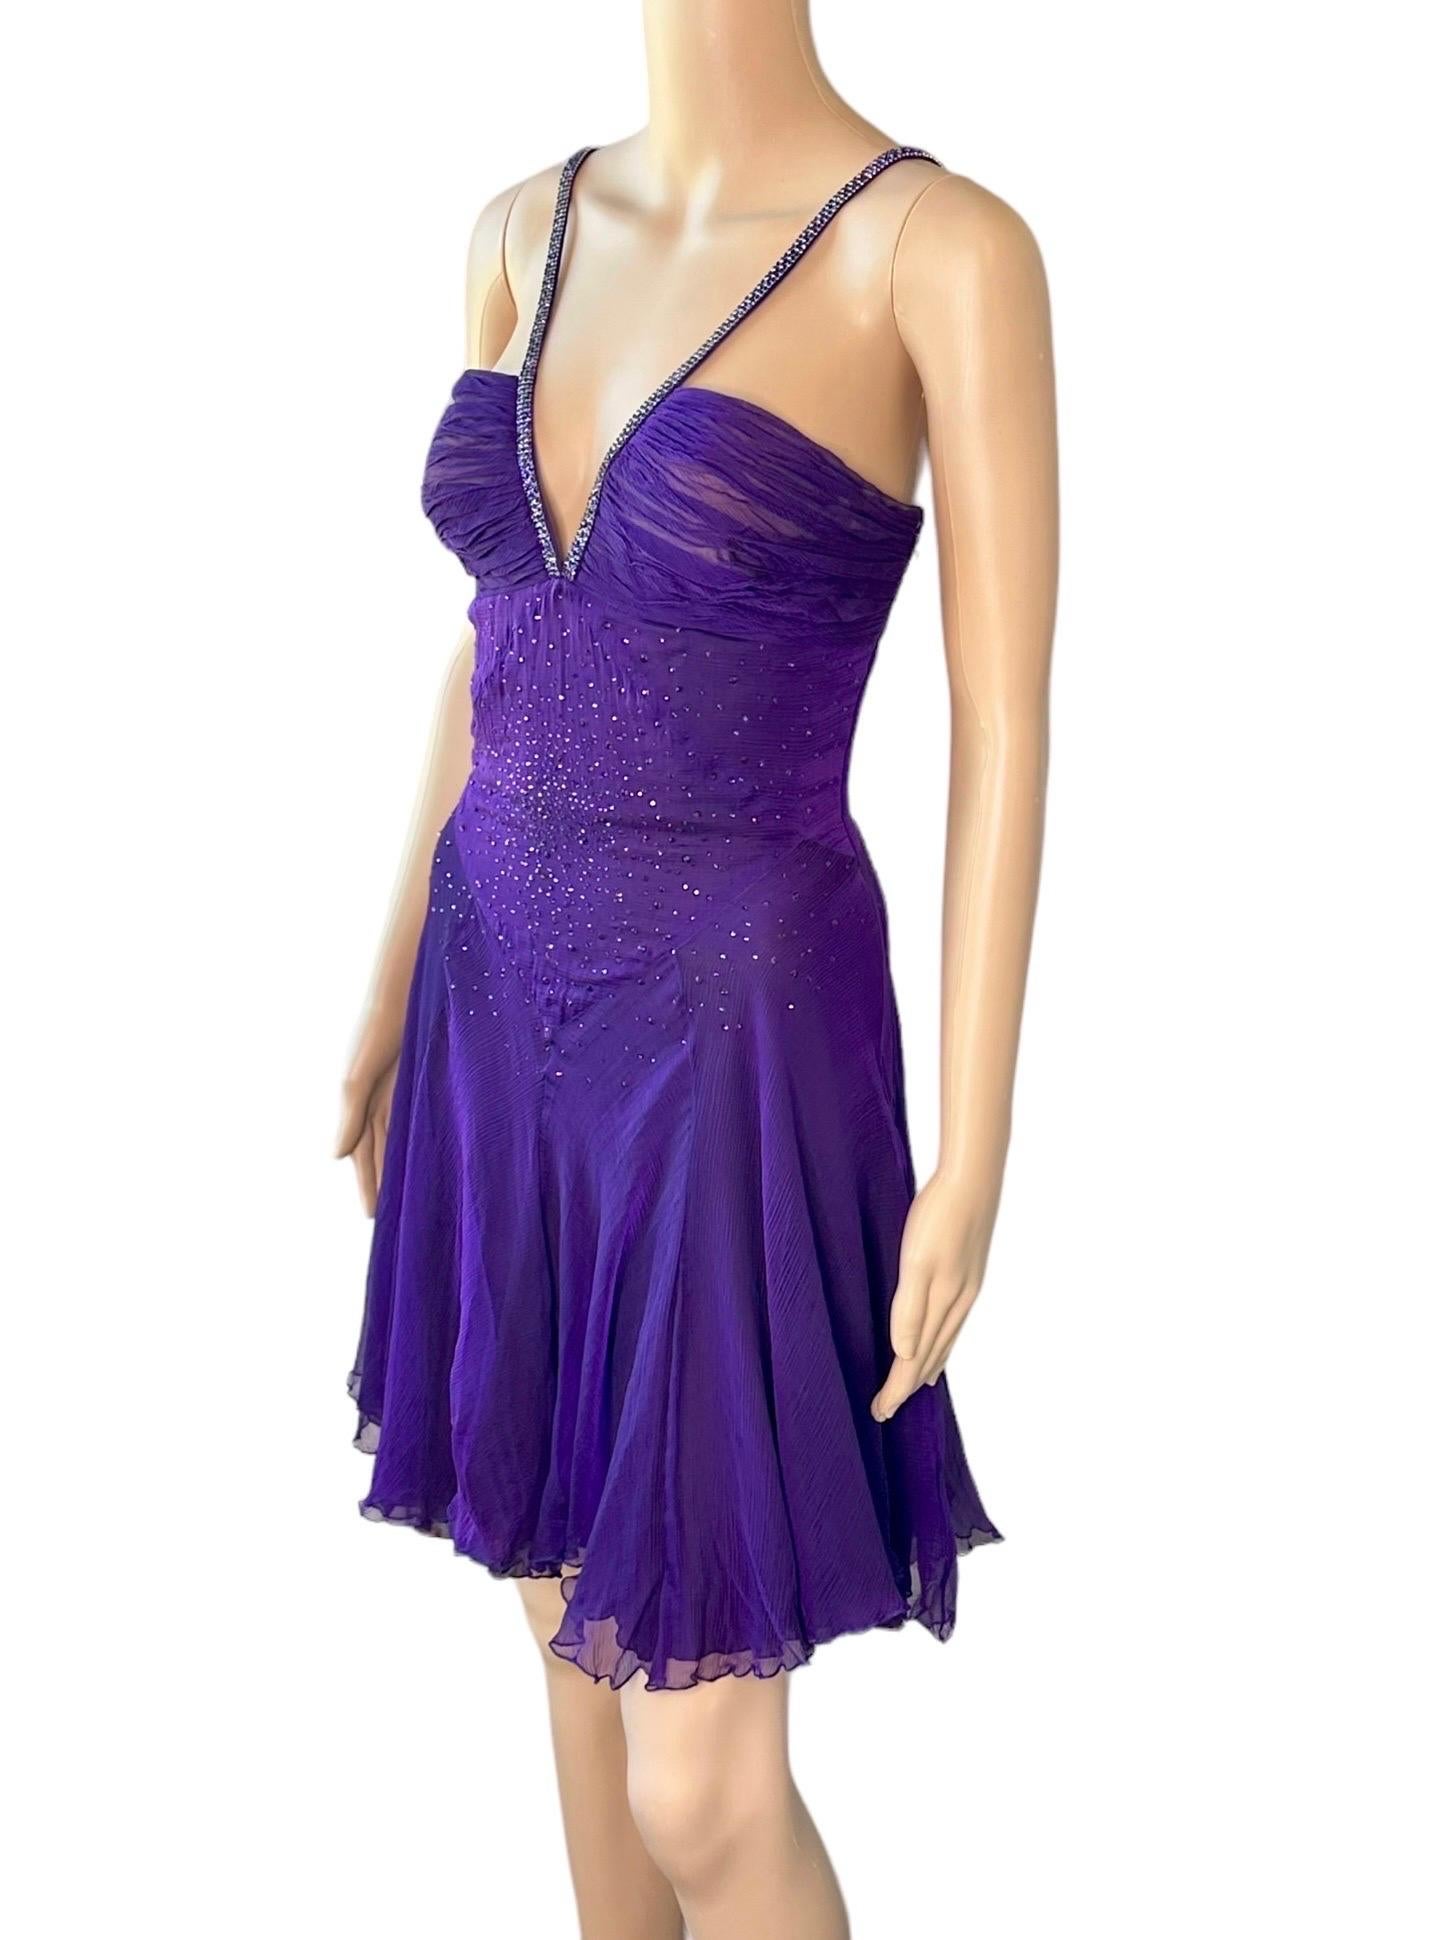 Versace c.2007 Crystal Embellished Plunging Neckline Semi-Sheer Purple Dress For Sale 1